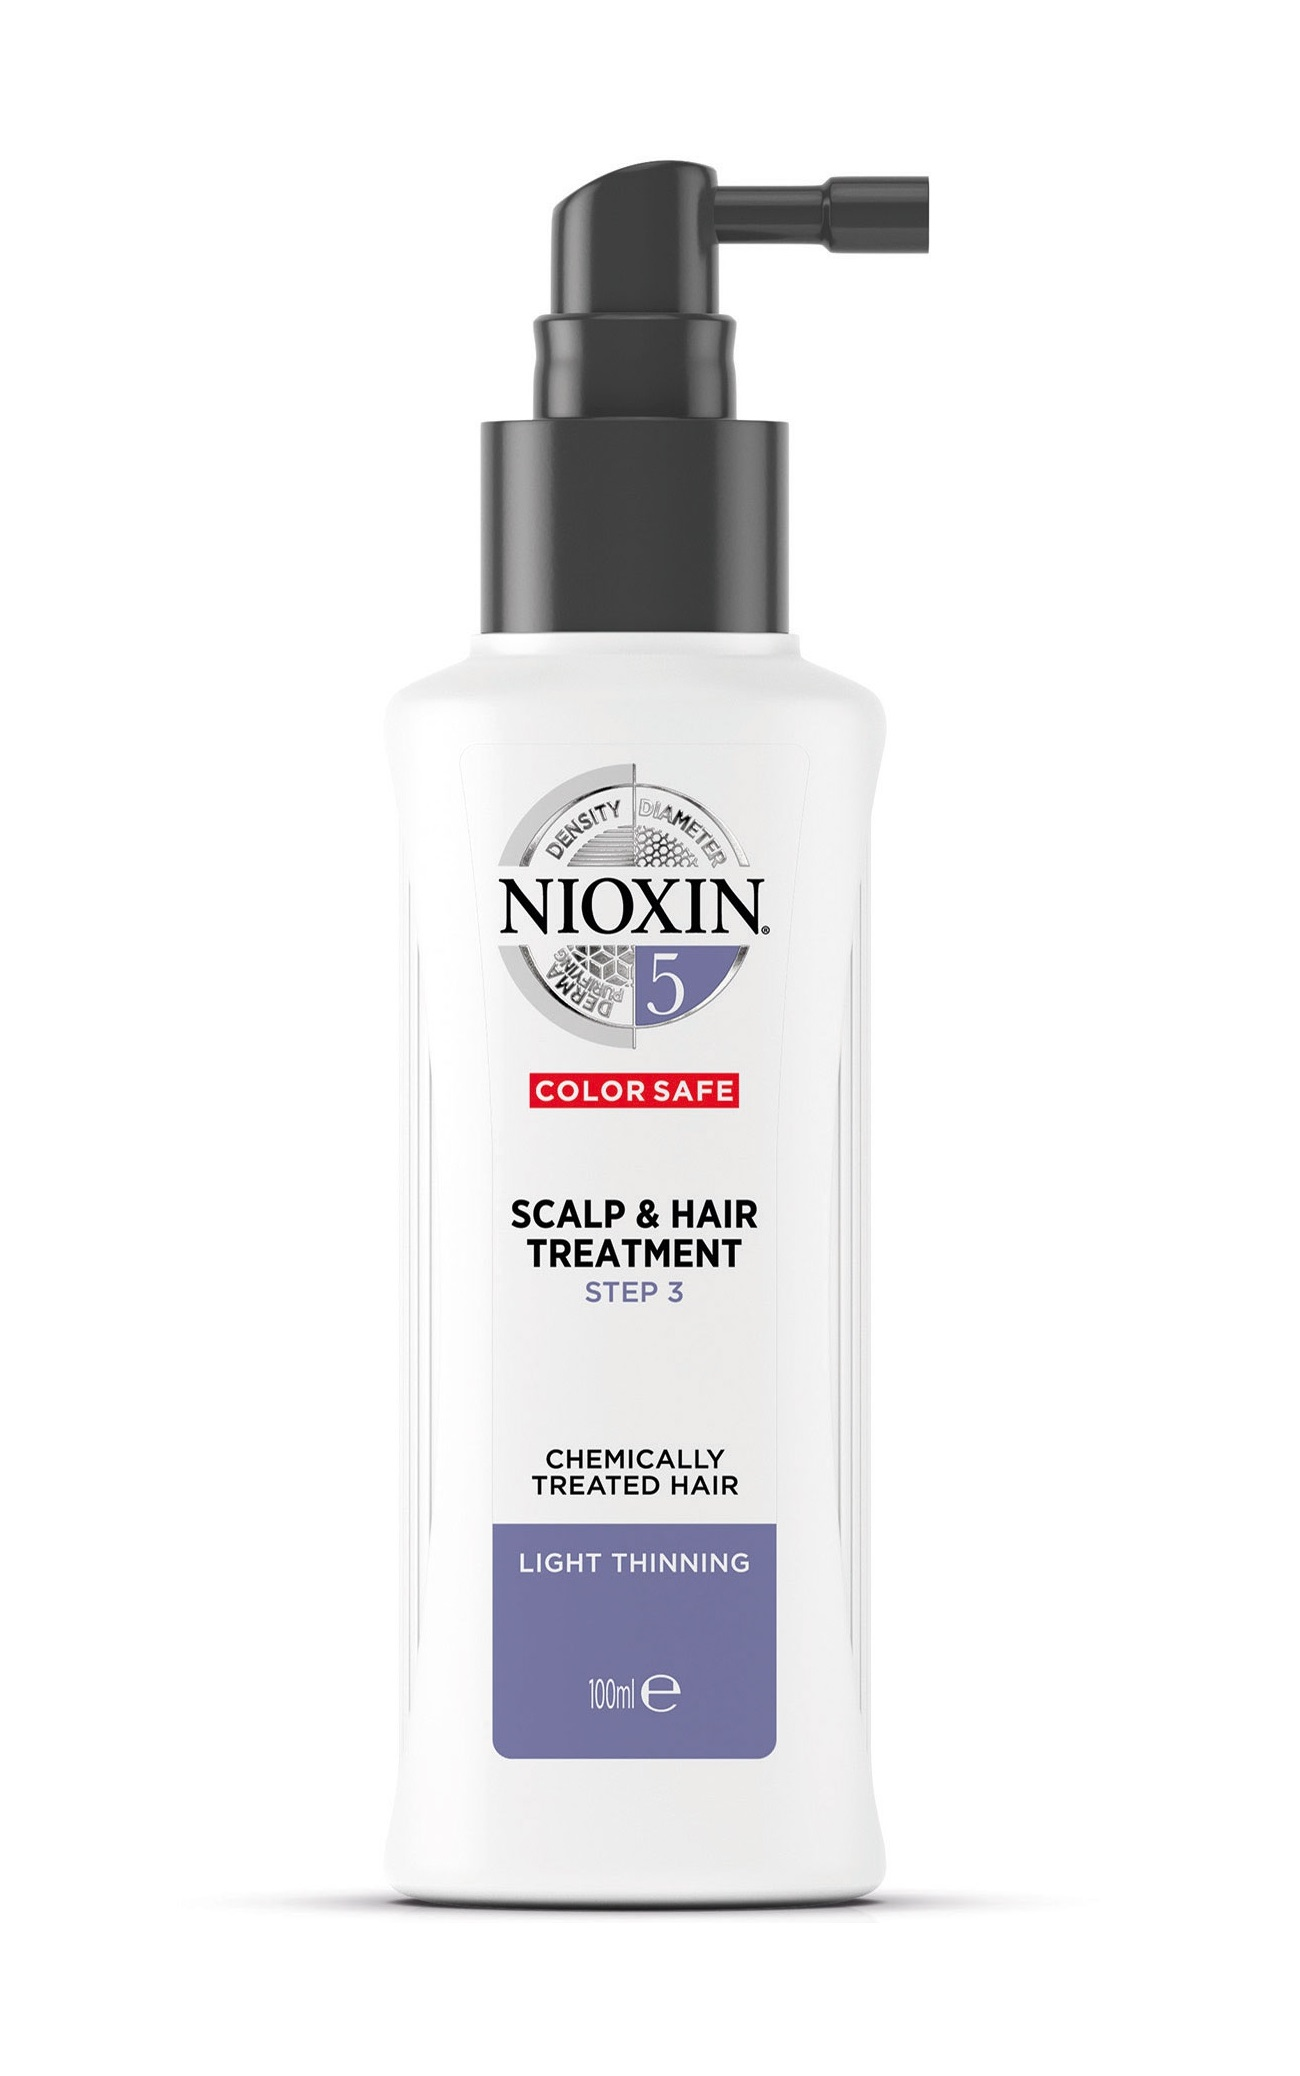 NIOXIN Маска питательная для жестких натуральных и окрашенных волос, с намечающейся тенденцией к выпадению, Система 5, 100 мл lerato cosmetic маска для экспресс восстановления поврежденных и склонных к выпадению волос recovery 300